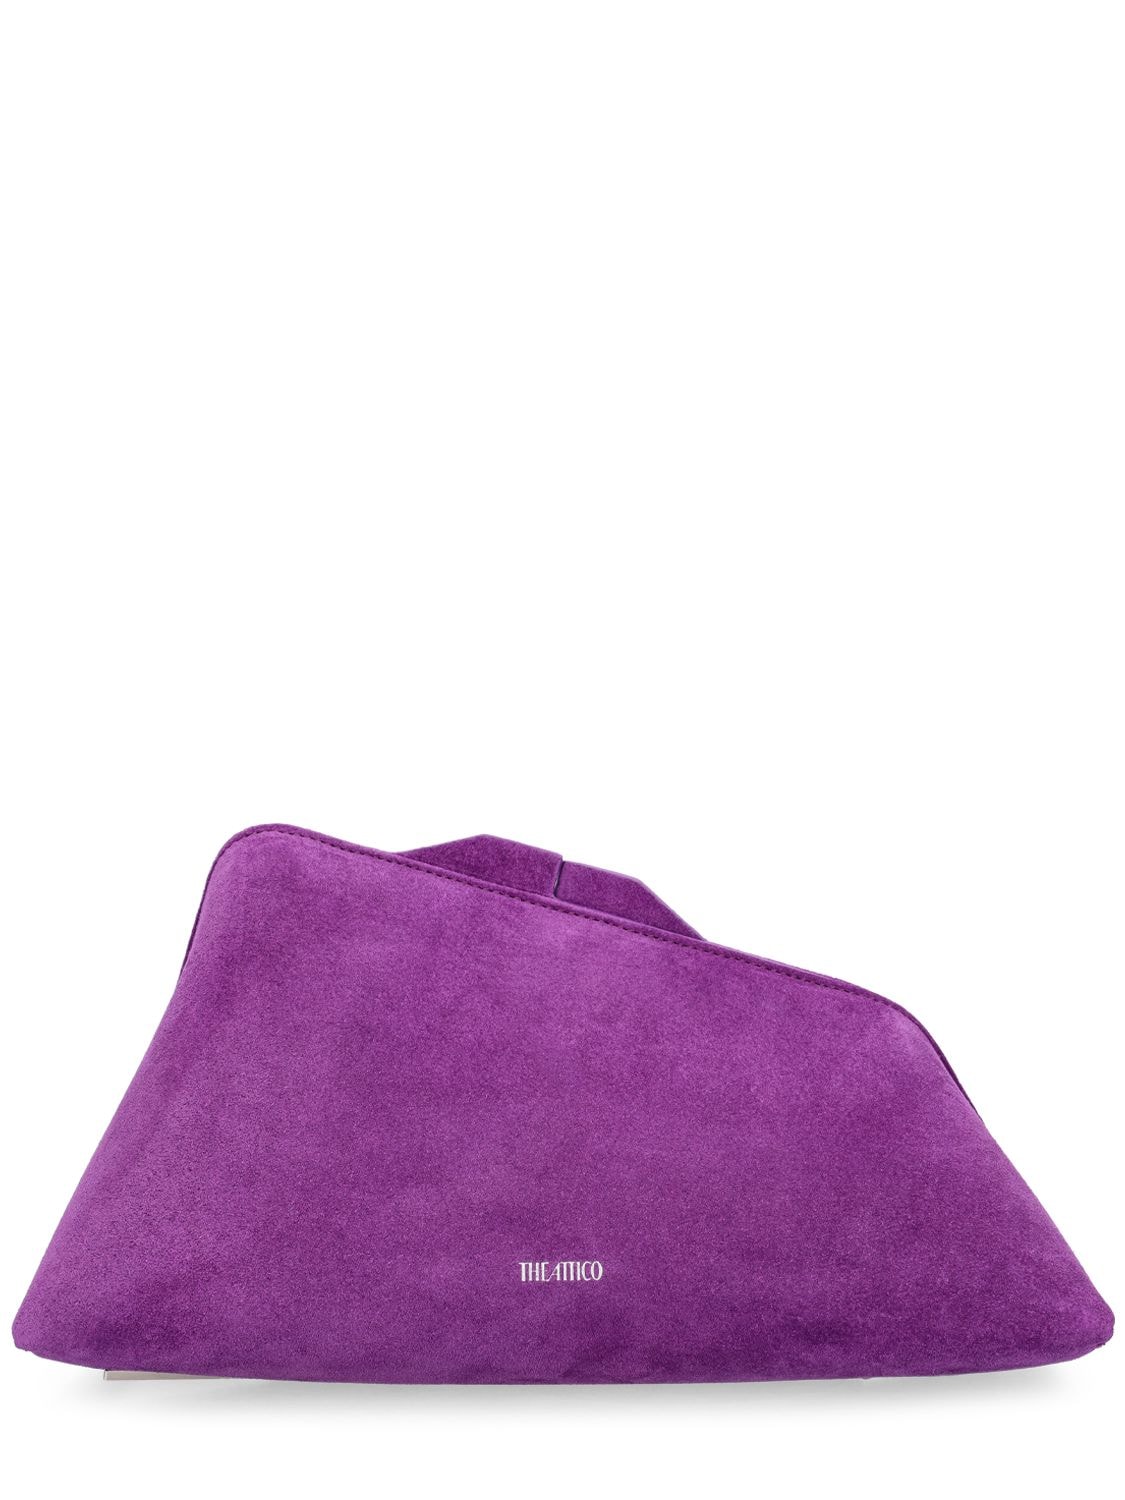 Attico 8:30 Pm Leather Clutch In Purple